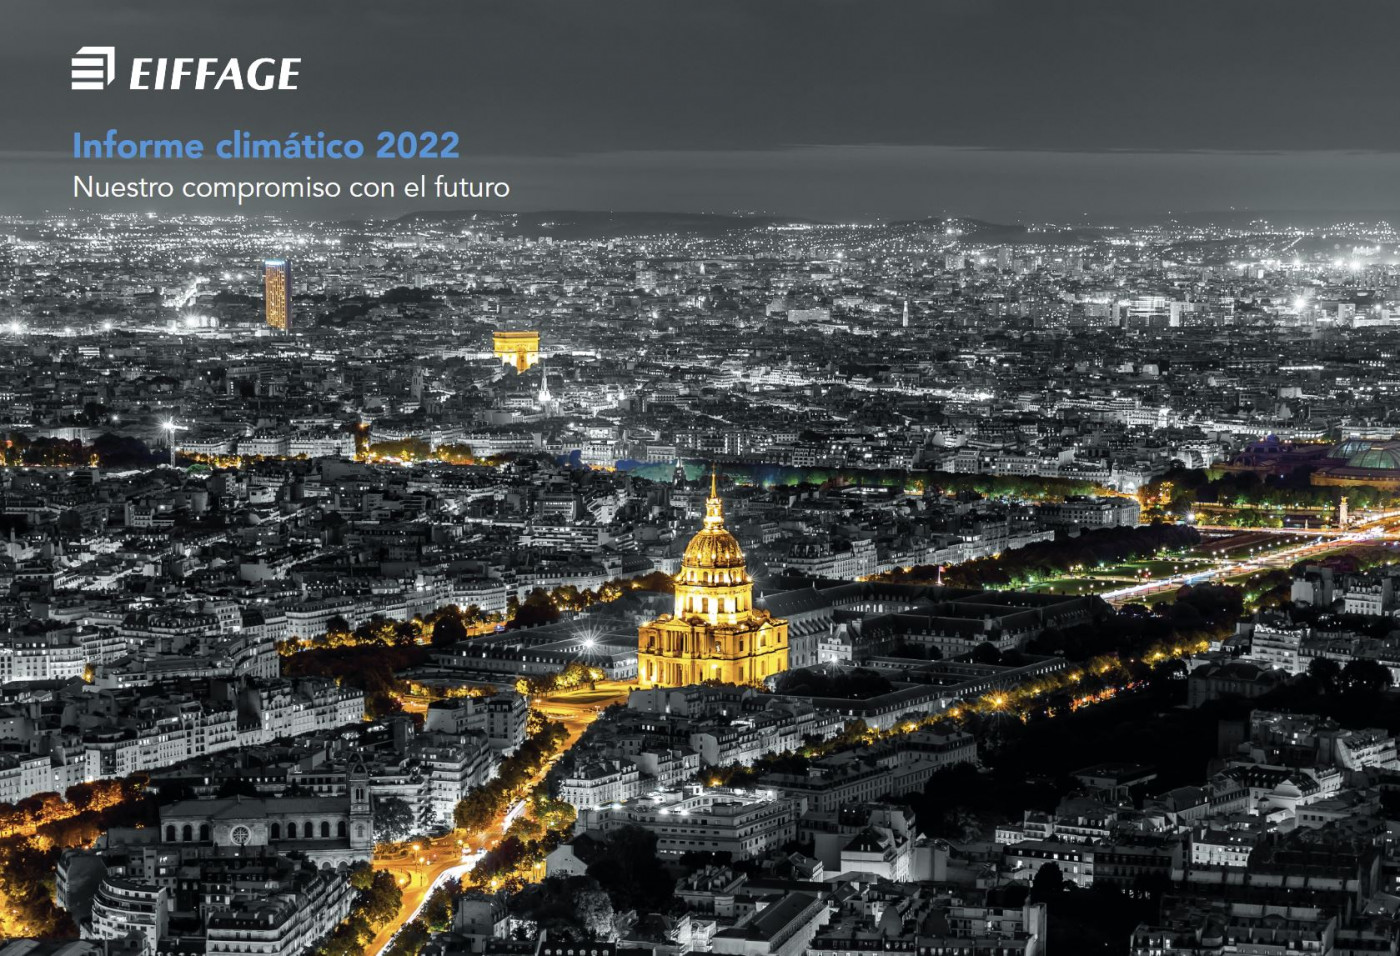 Informe Climático 2022: el objetivo de Eiffage para 2050 es la neutralidad de carbono